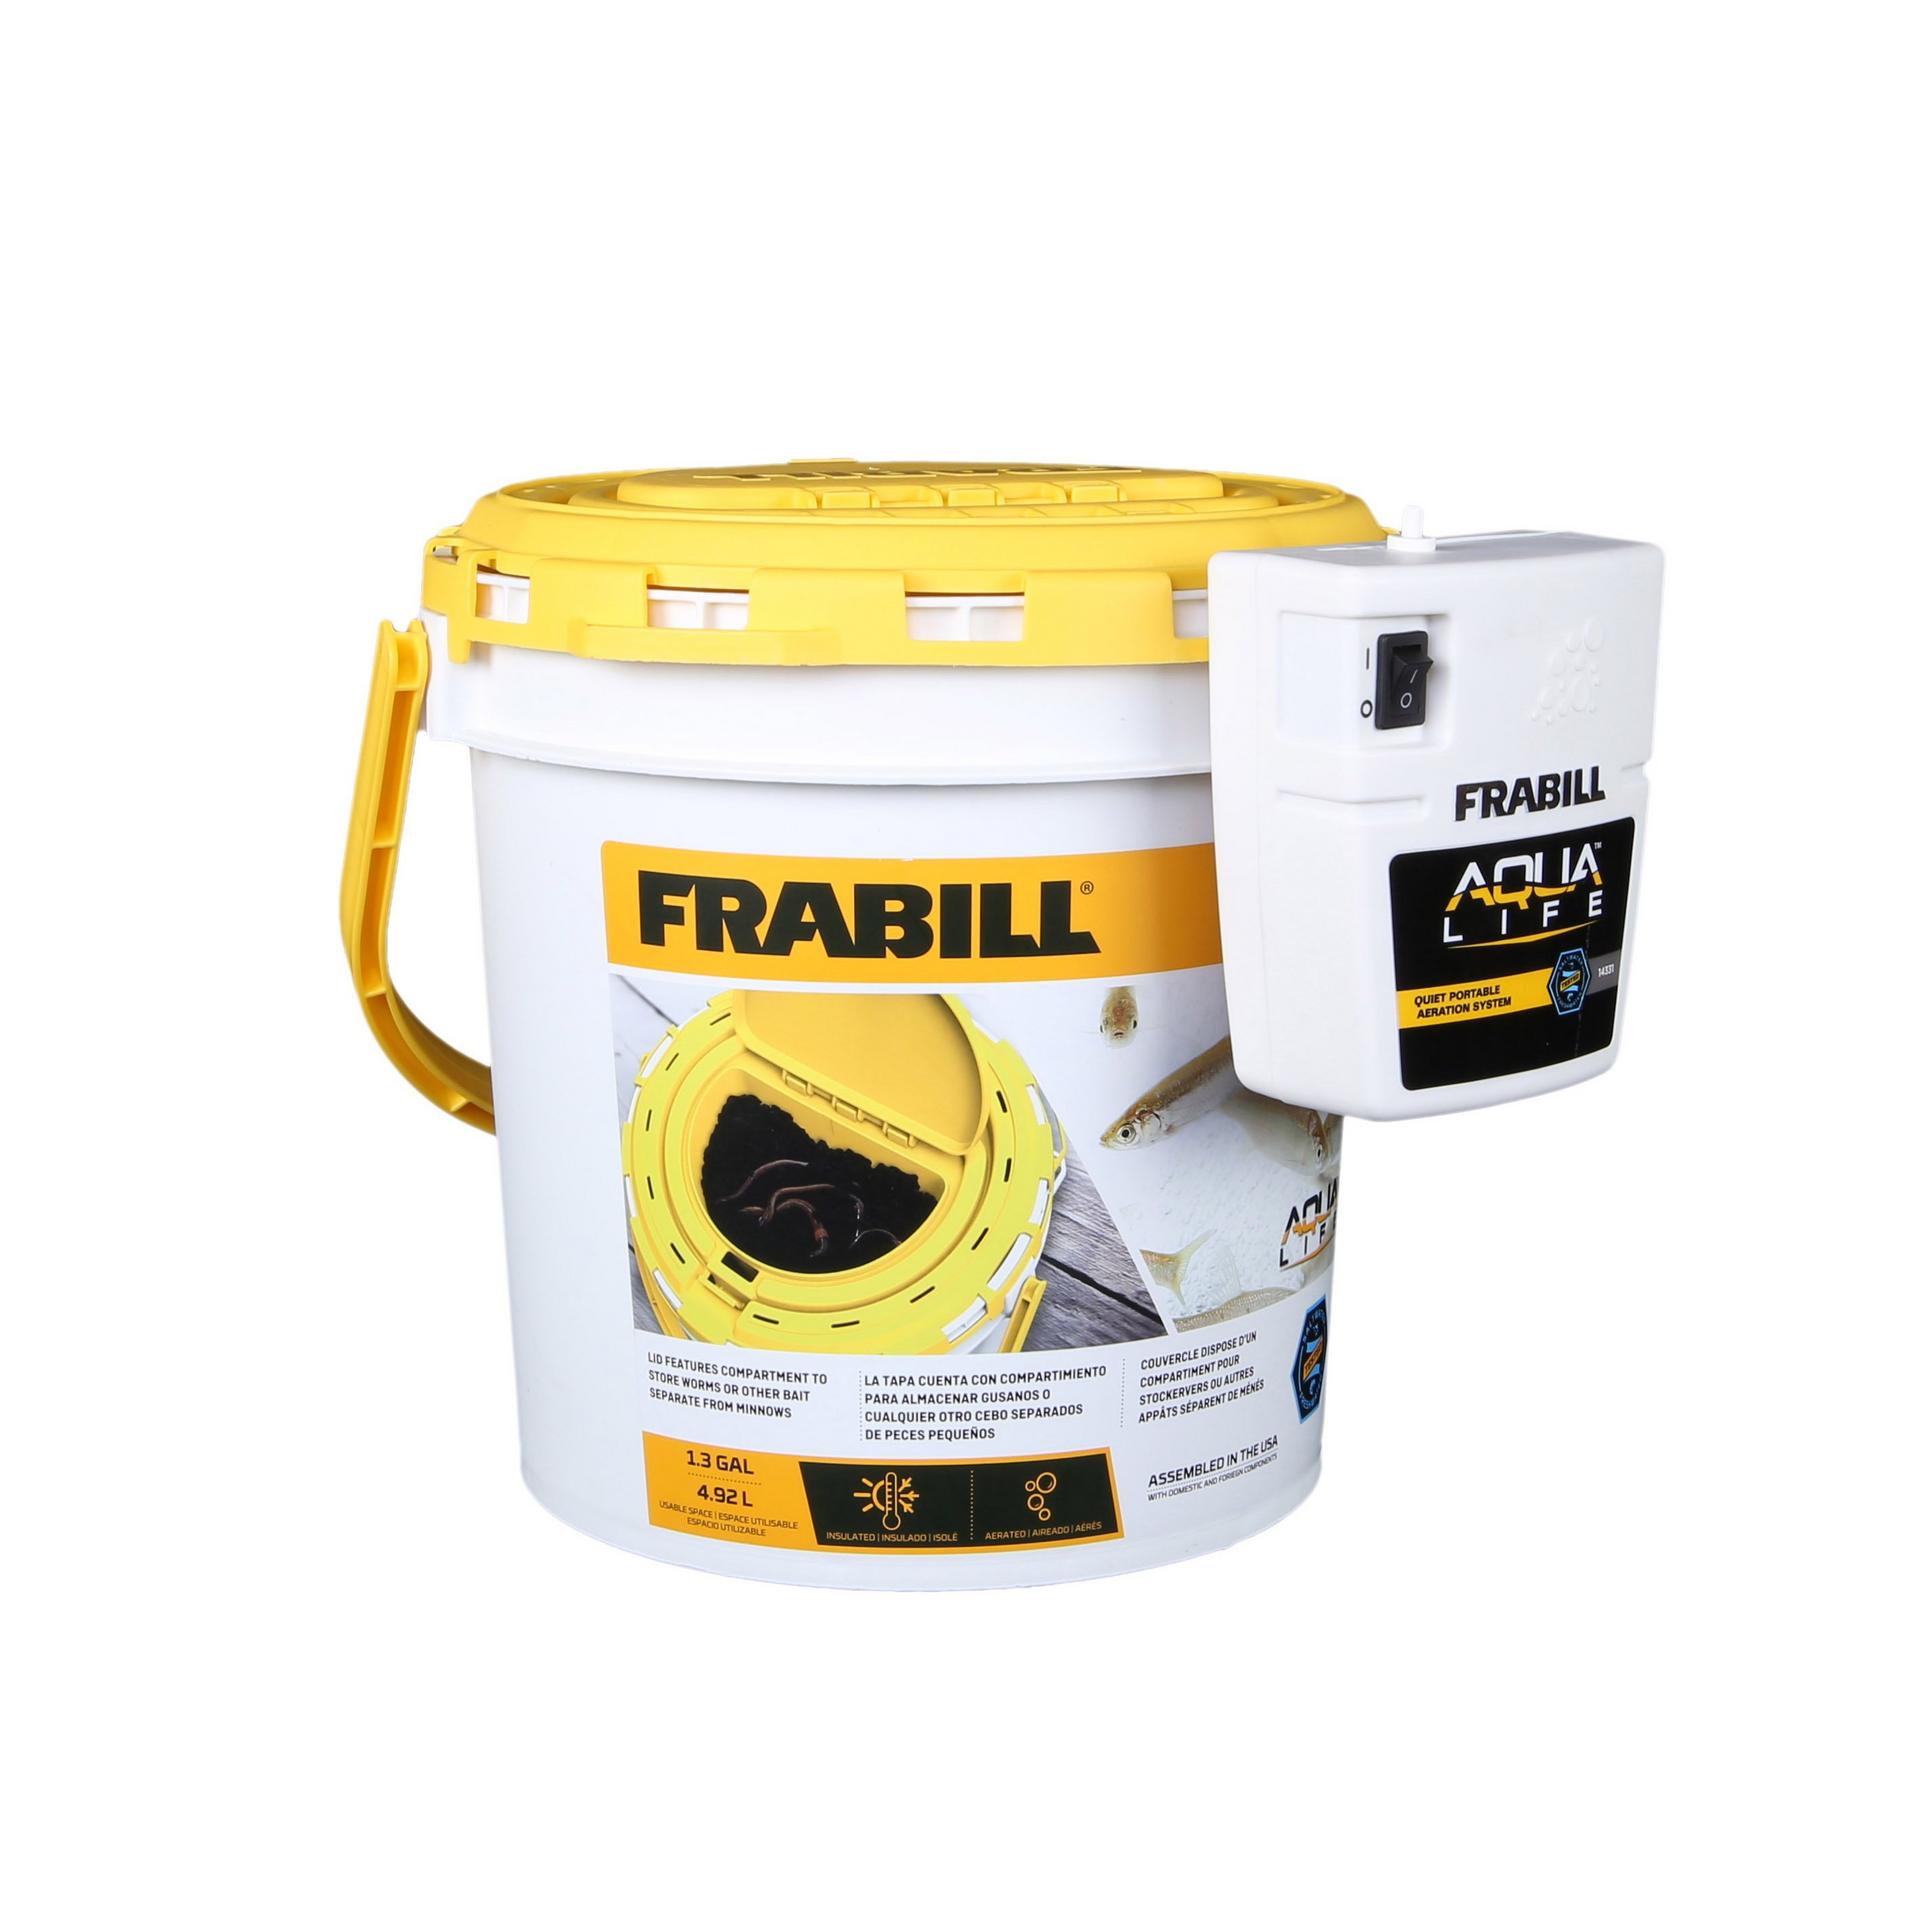 Aerator Bait Buckets  Frabill® – Frabill Fishing